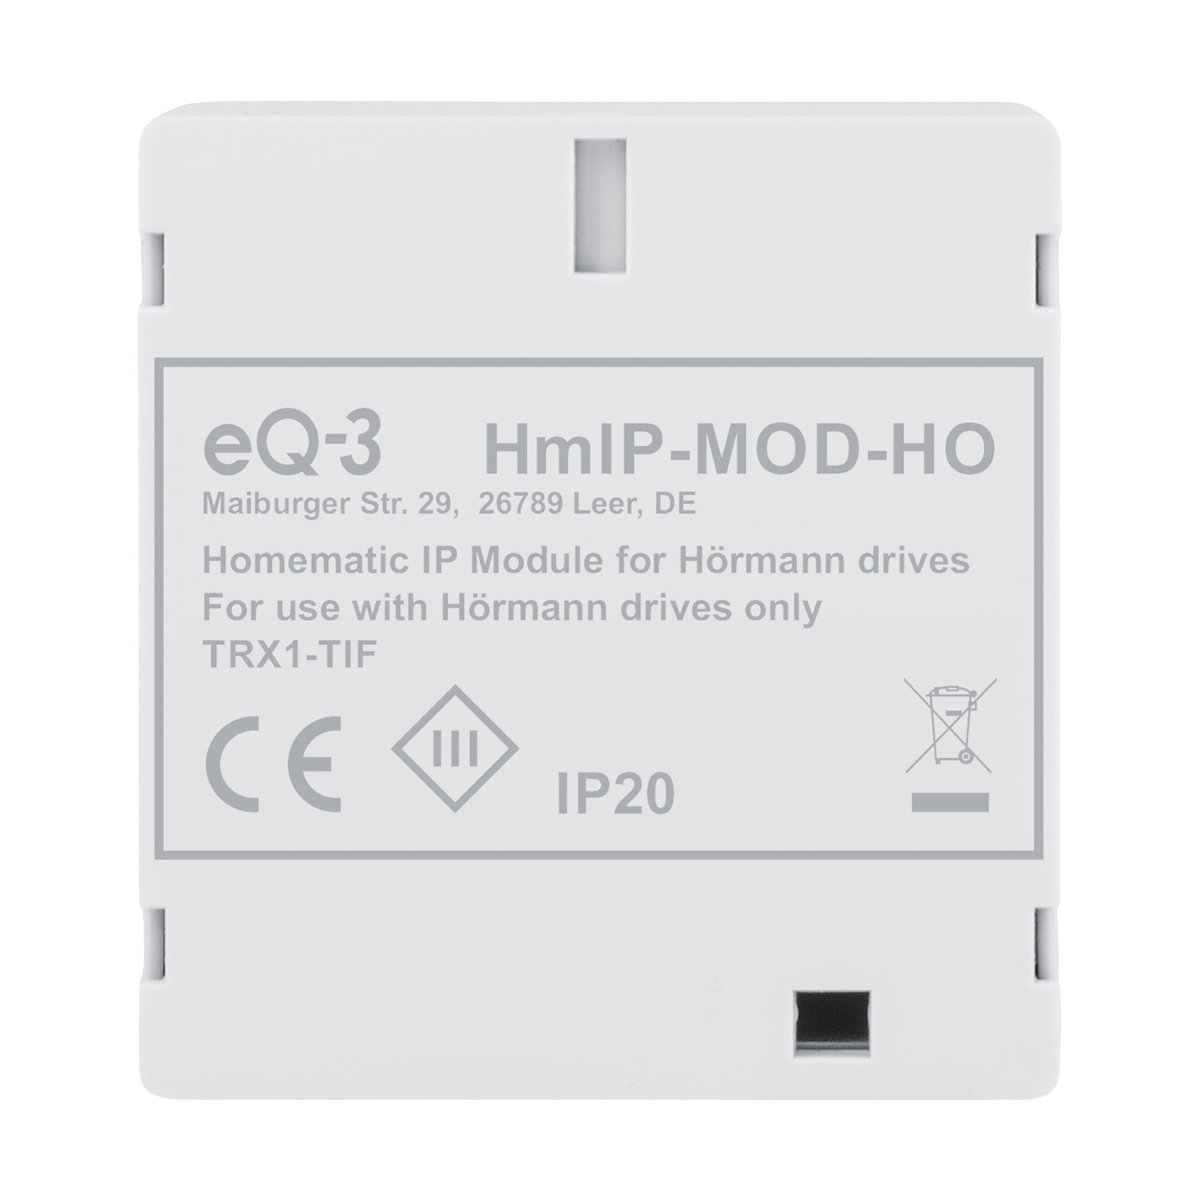 Grau Hörmann-Antriebe, IP Modul HmIP-MOD-HO HOMEMATIC für